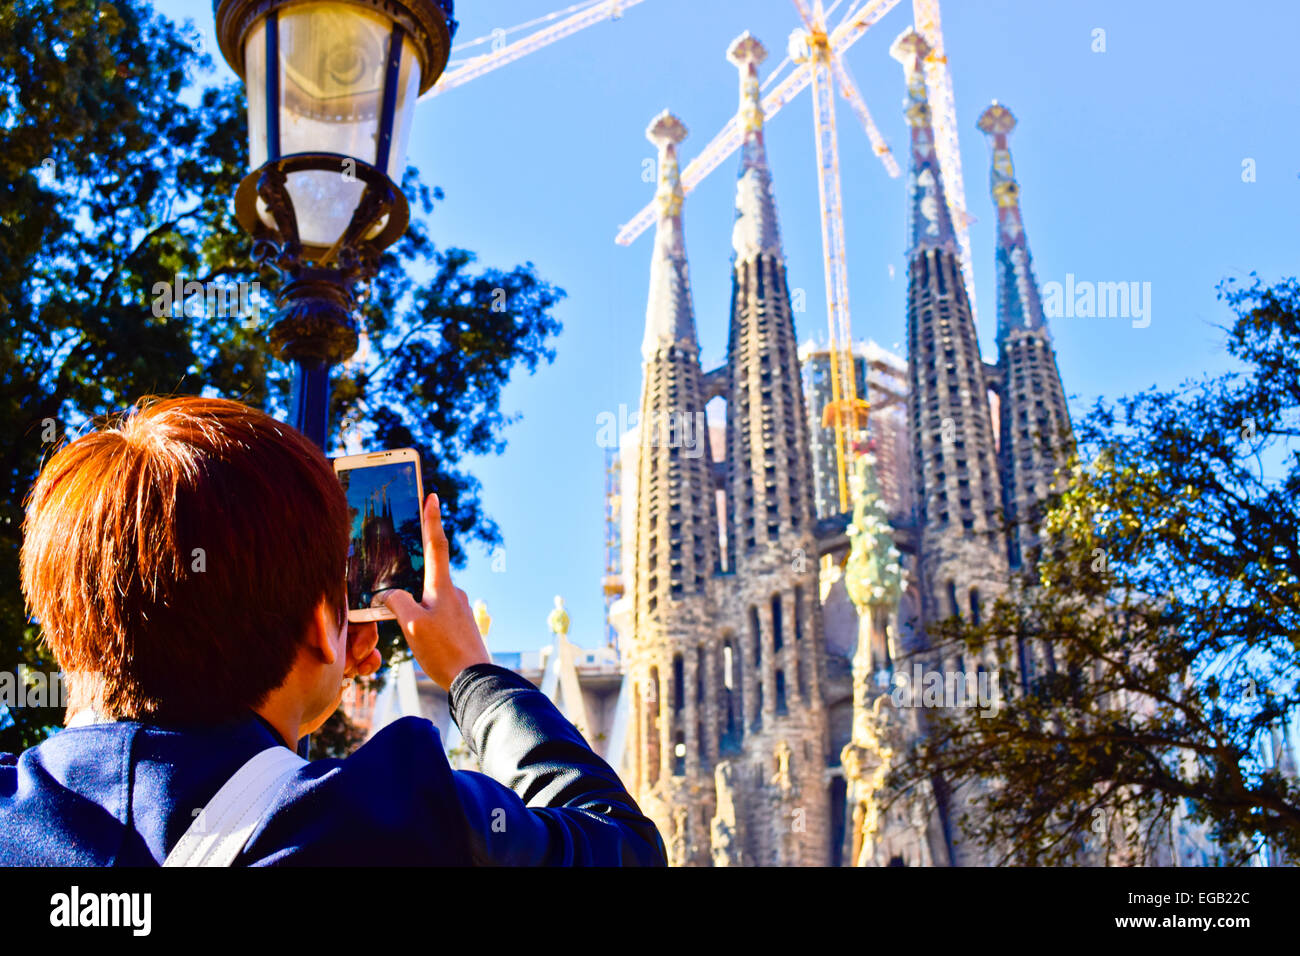 Turistica prendendo le foto con il suo cellulare. La Sagrada Familia di Barcellona, in Catalogna, Spagna. Foto Stock